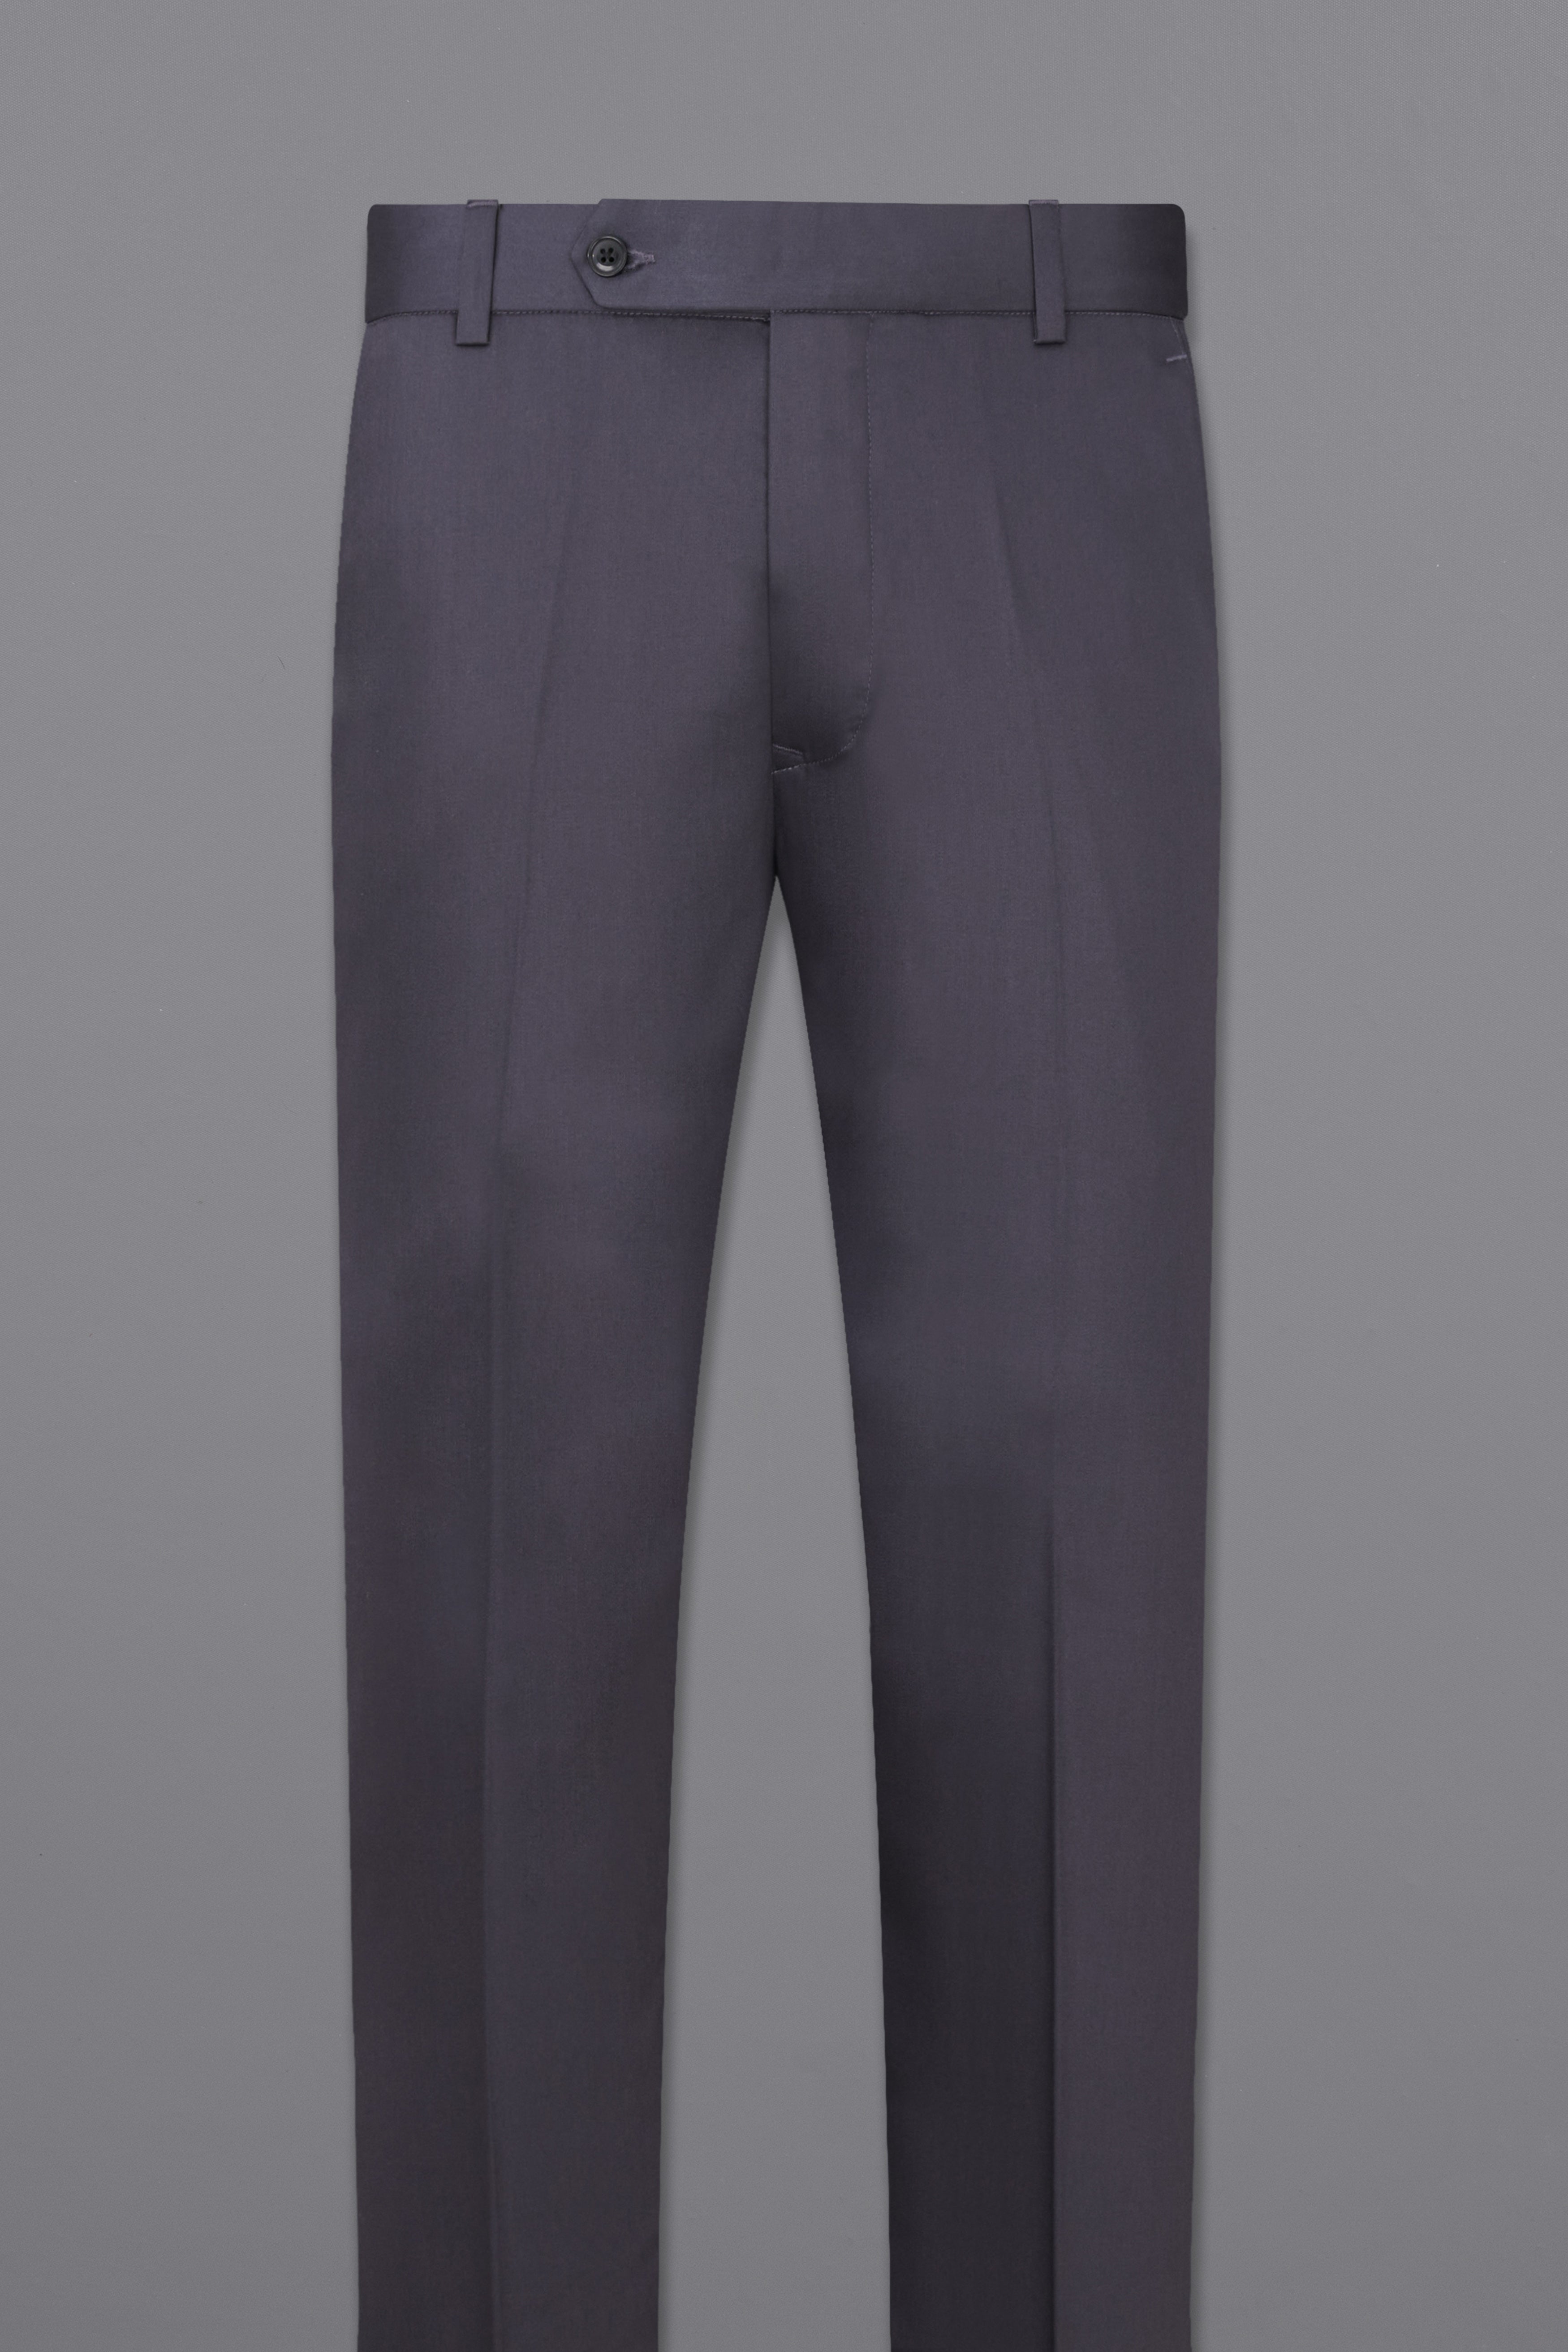 Stylish Men Pants Formal Groom Suit Pants Straight Zipper Male Suit Pants  Match Shirt